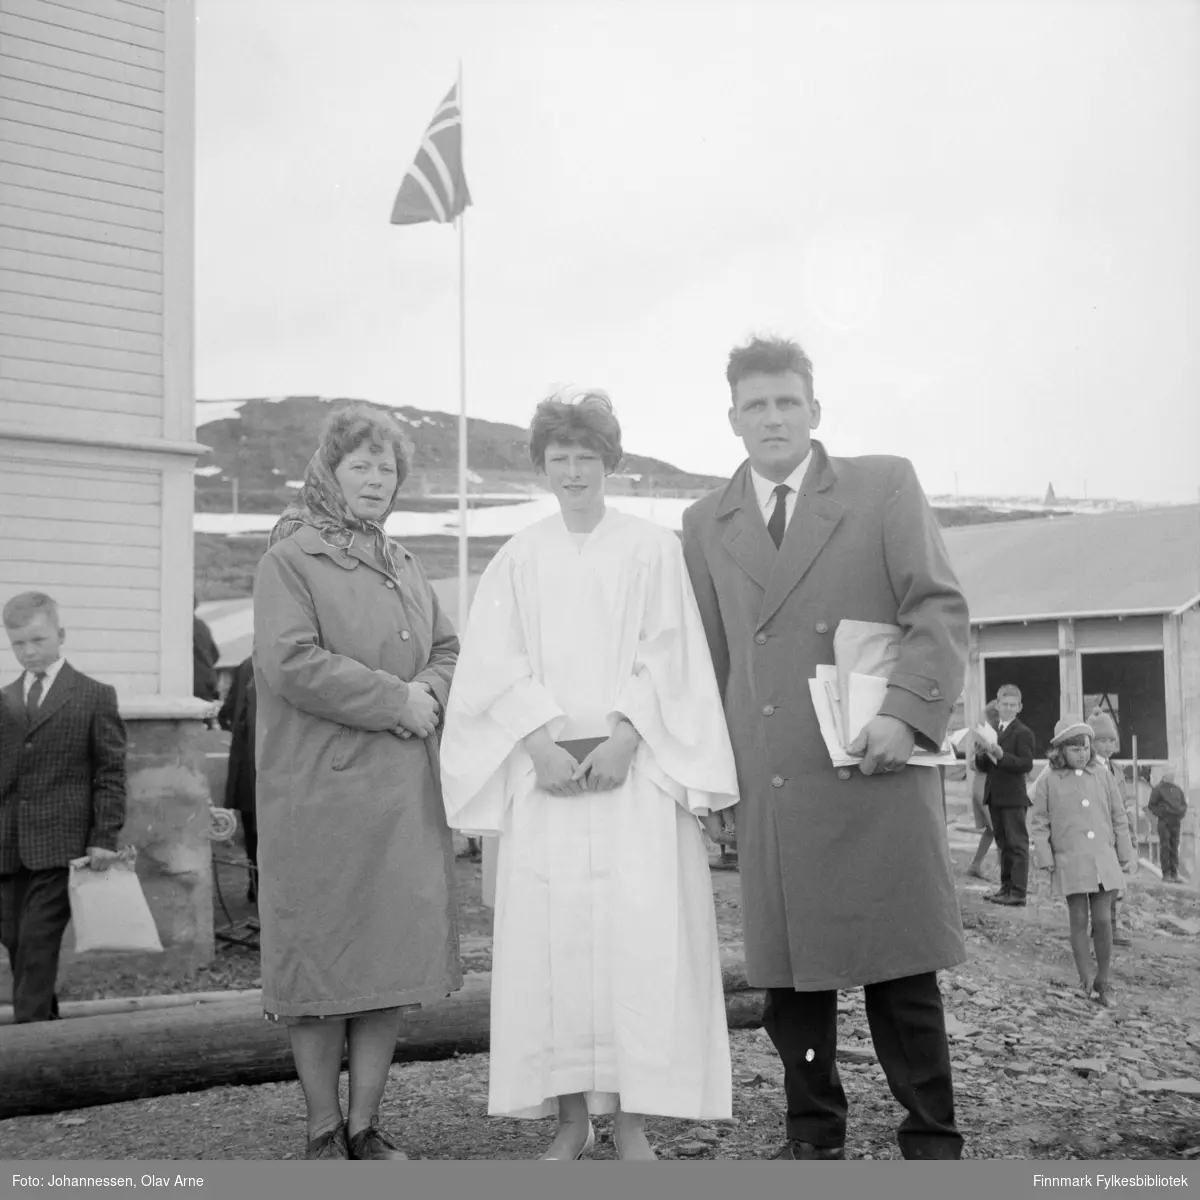 Solbjørg "Bogga" til venstre, datteren Lisbeth Ophaug (1950) og faren Allert Sørensen. Idar Wahlmann helt til venstre. De står utenfor Båtsfjord skole

Lisbeth ble konfirmert søndag 31. mai 1964 (Finnmarken annonse tirsdag 26.mai1964)

